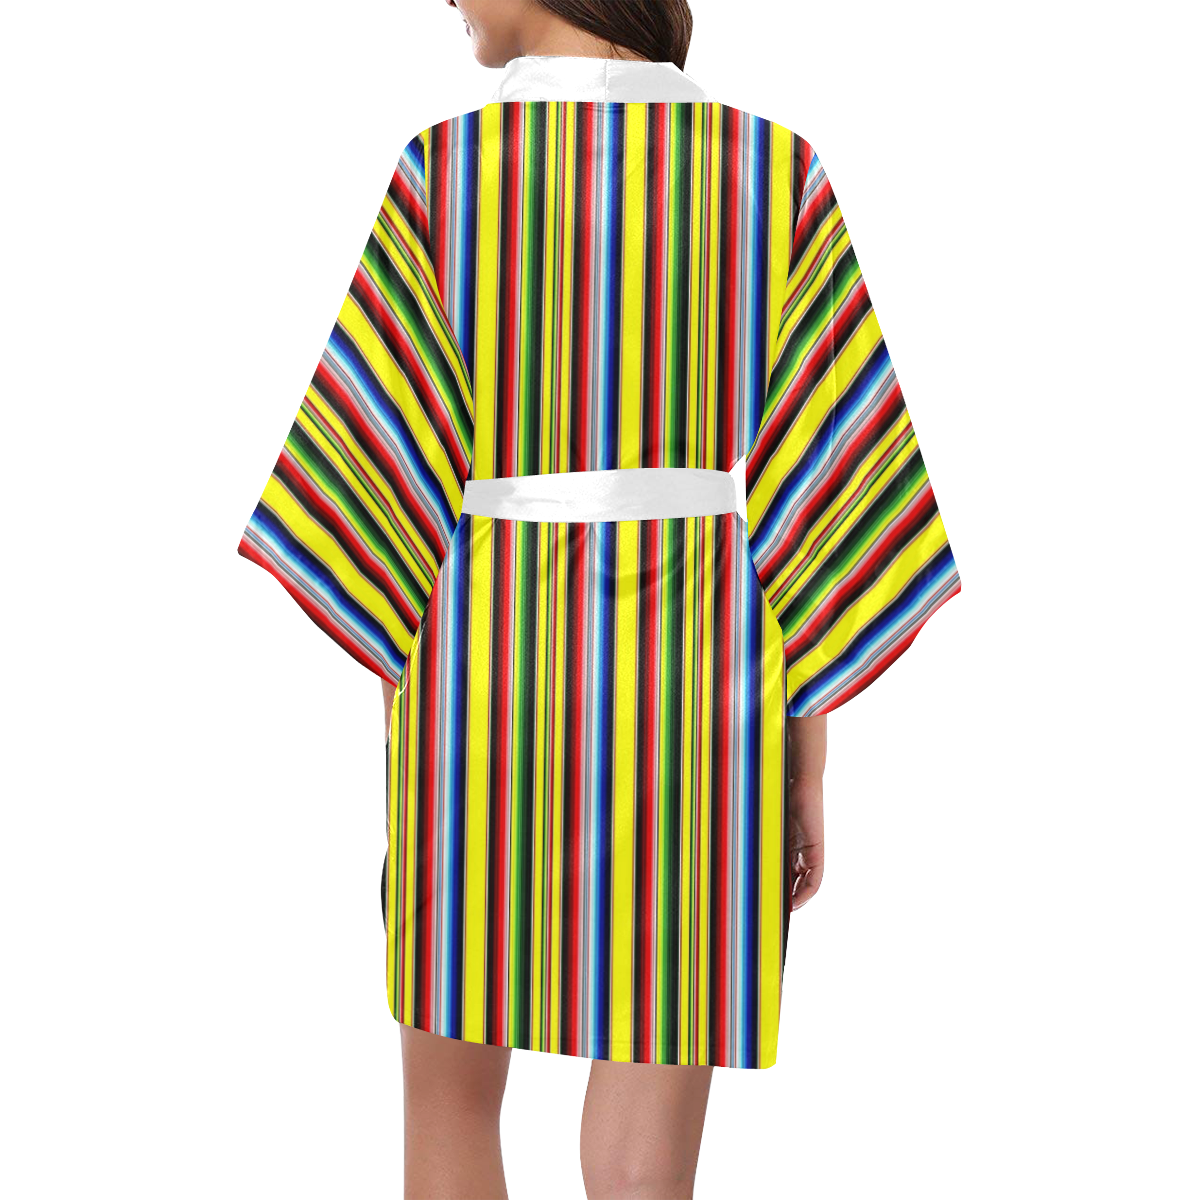 bright serape Kimono Robe